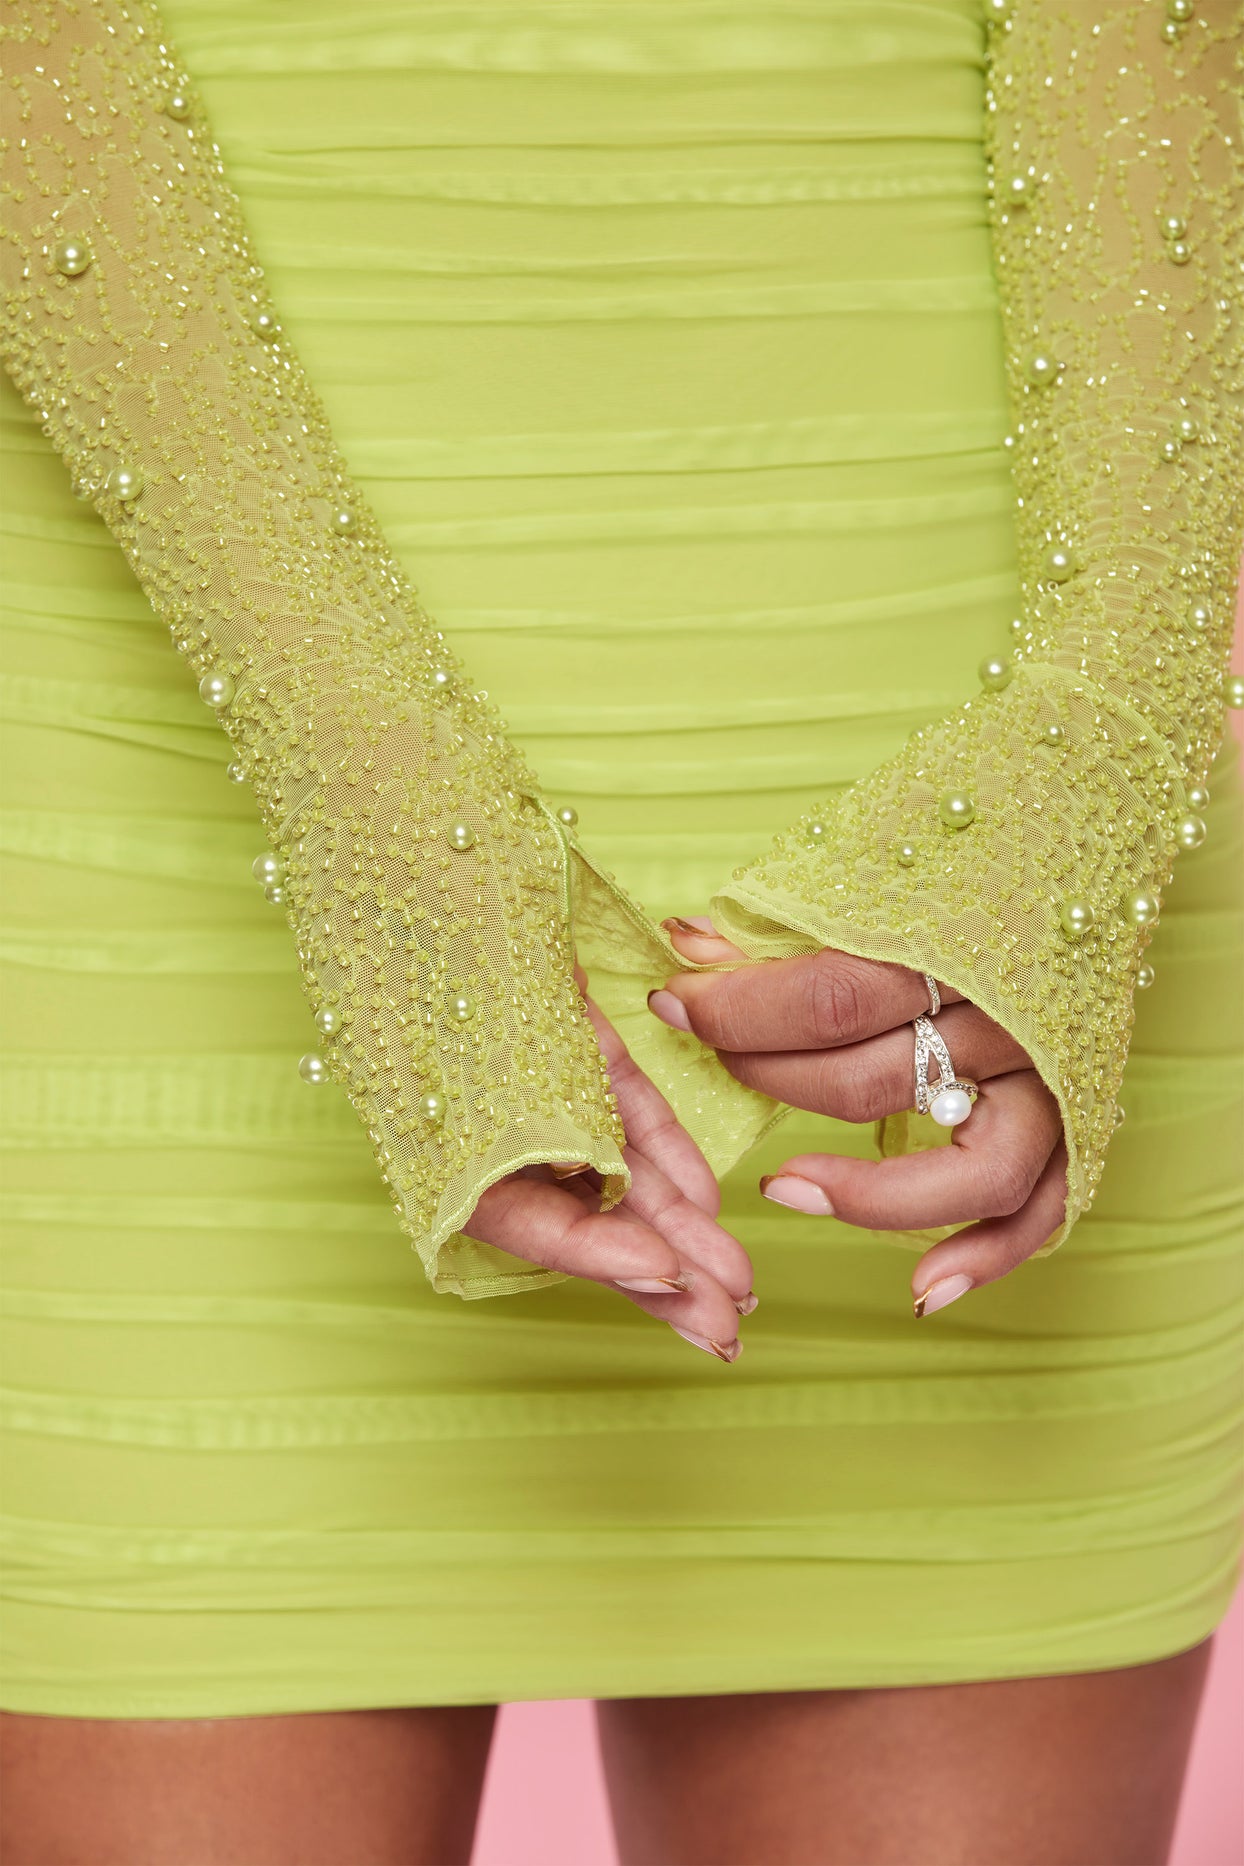 Ozdobiona sukienka mini z długim rękawem w kolorze limonkowym